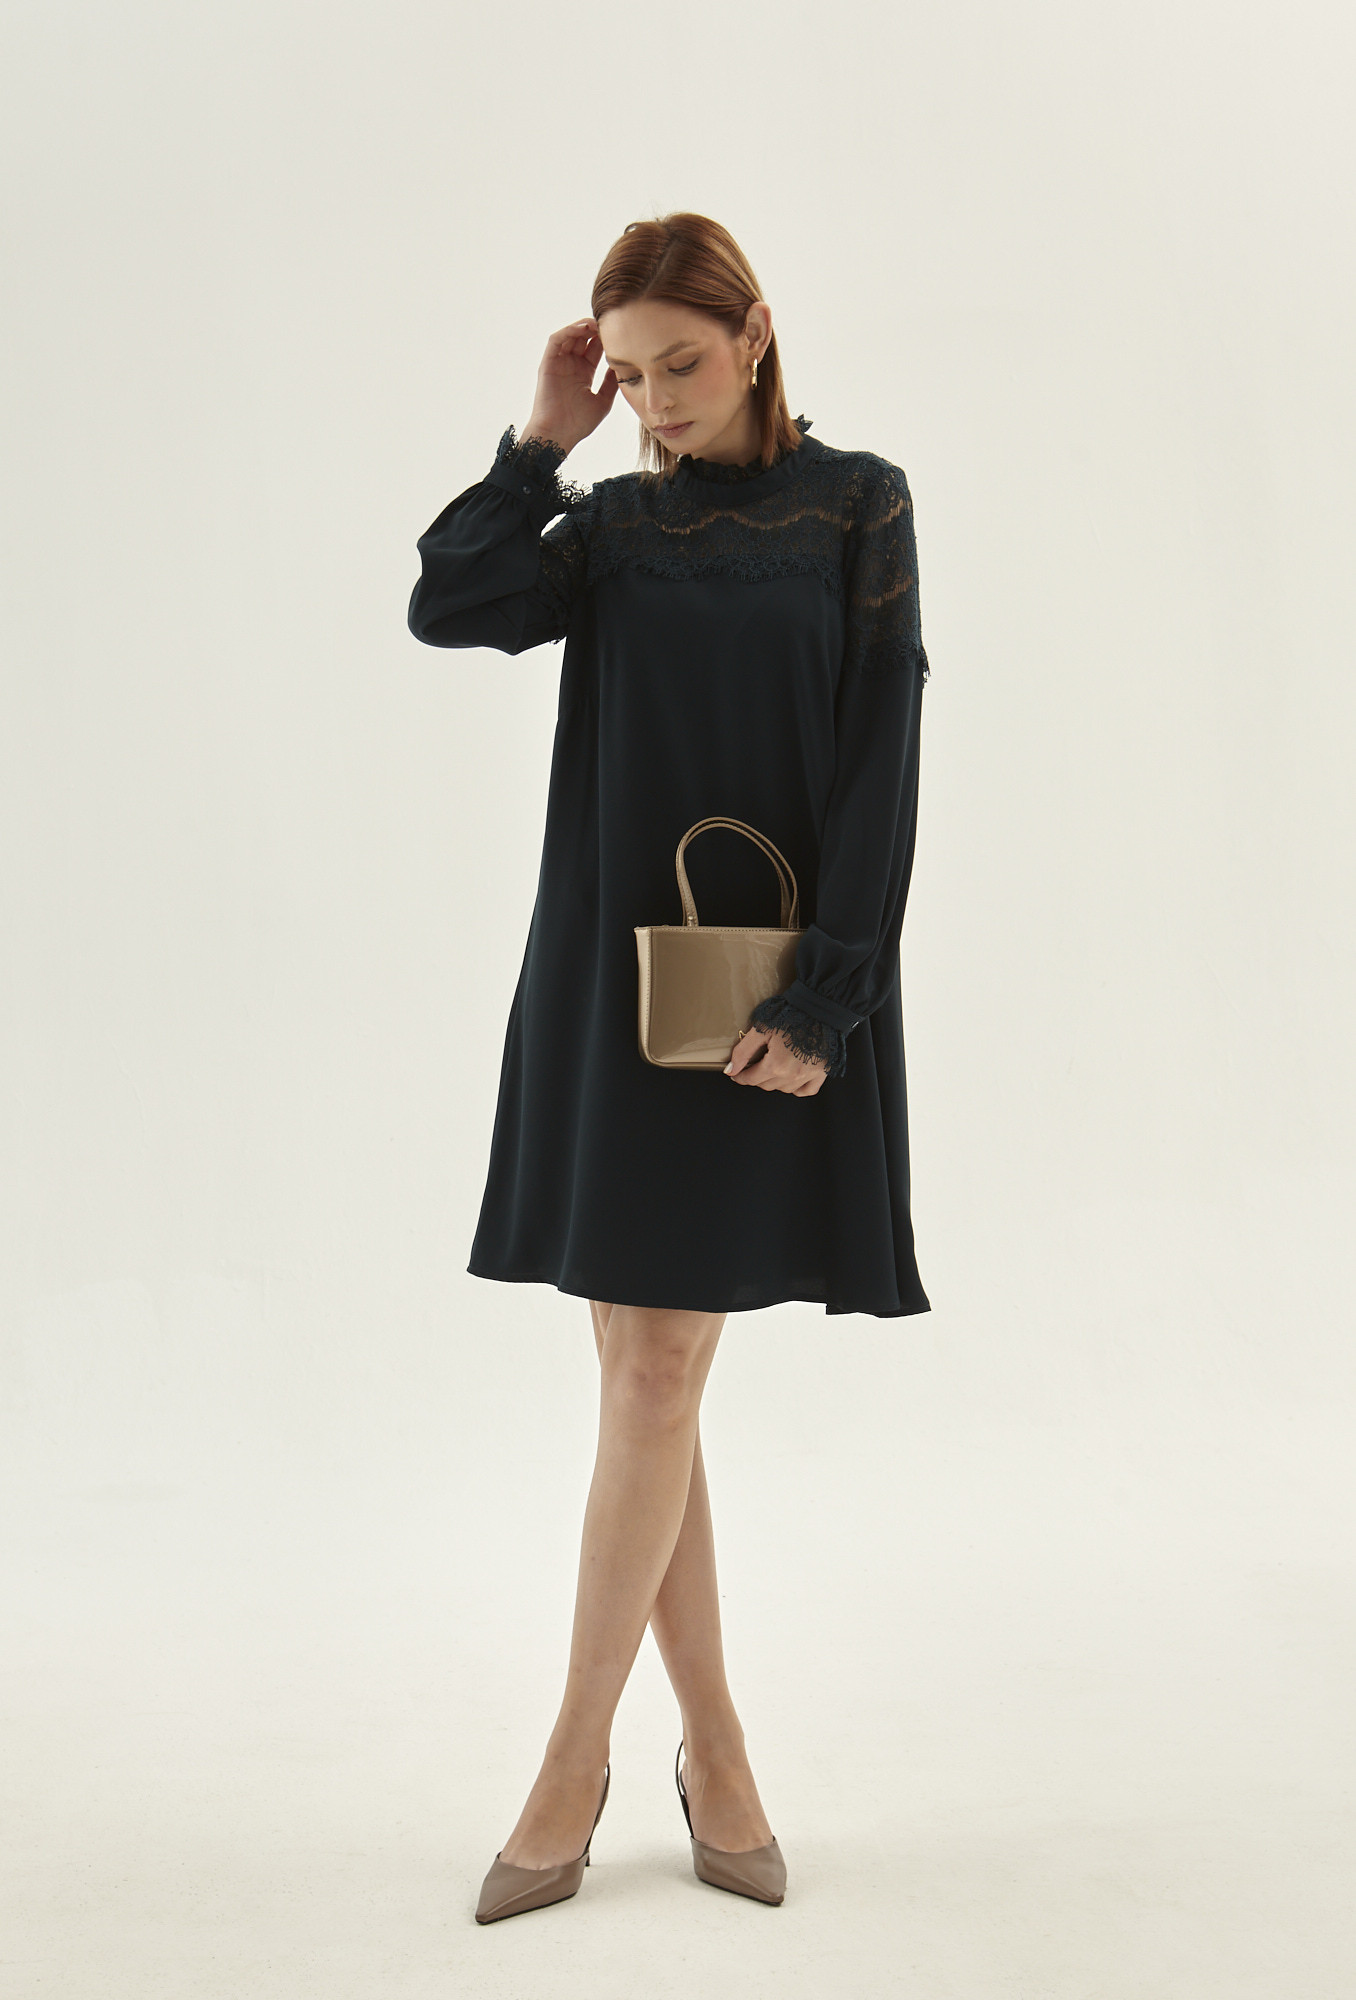 Monnari Šaty Černé šaty s krajkovým panelem Multi Turqoise 36